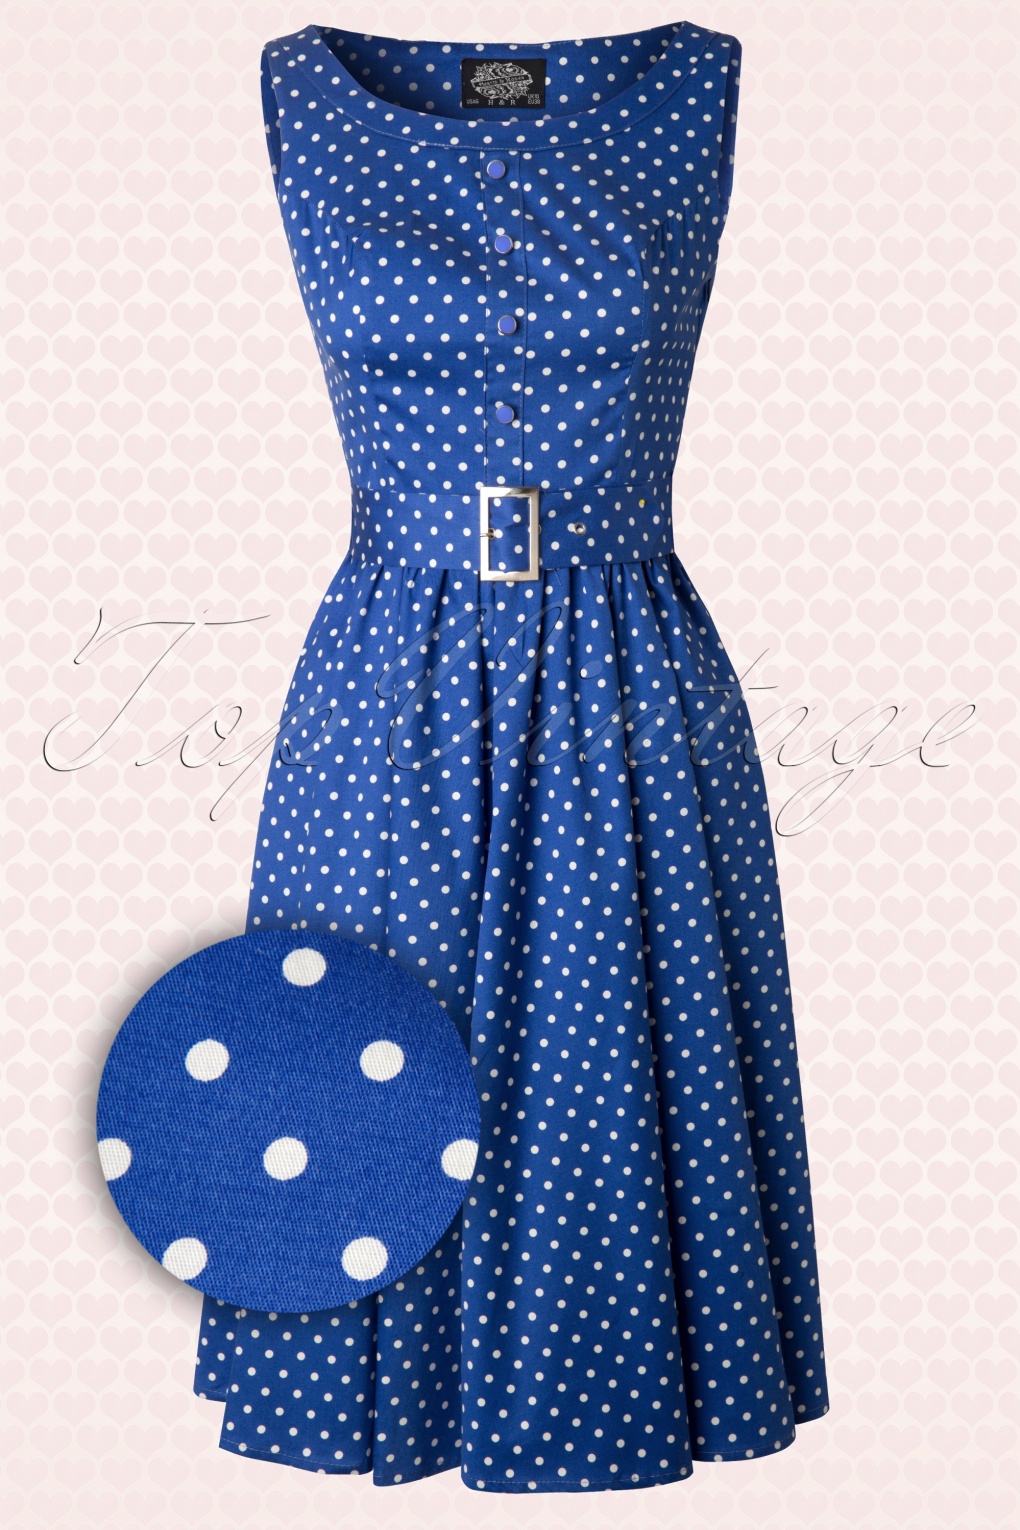 50s Sally Polkadot Swing Dress in Blue